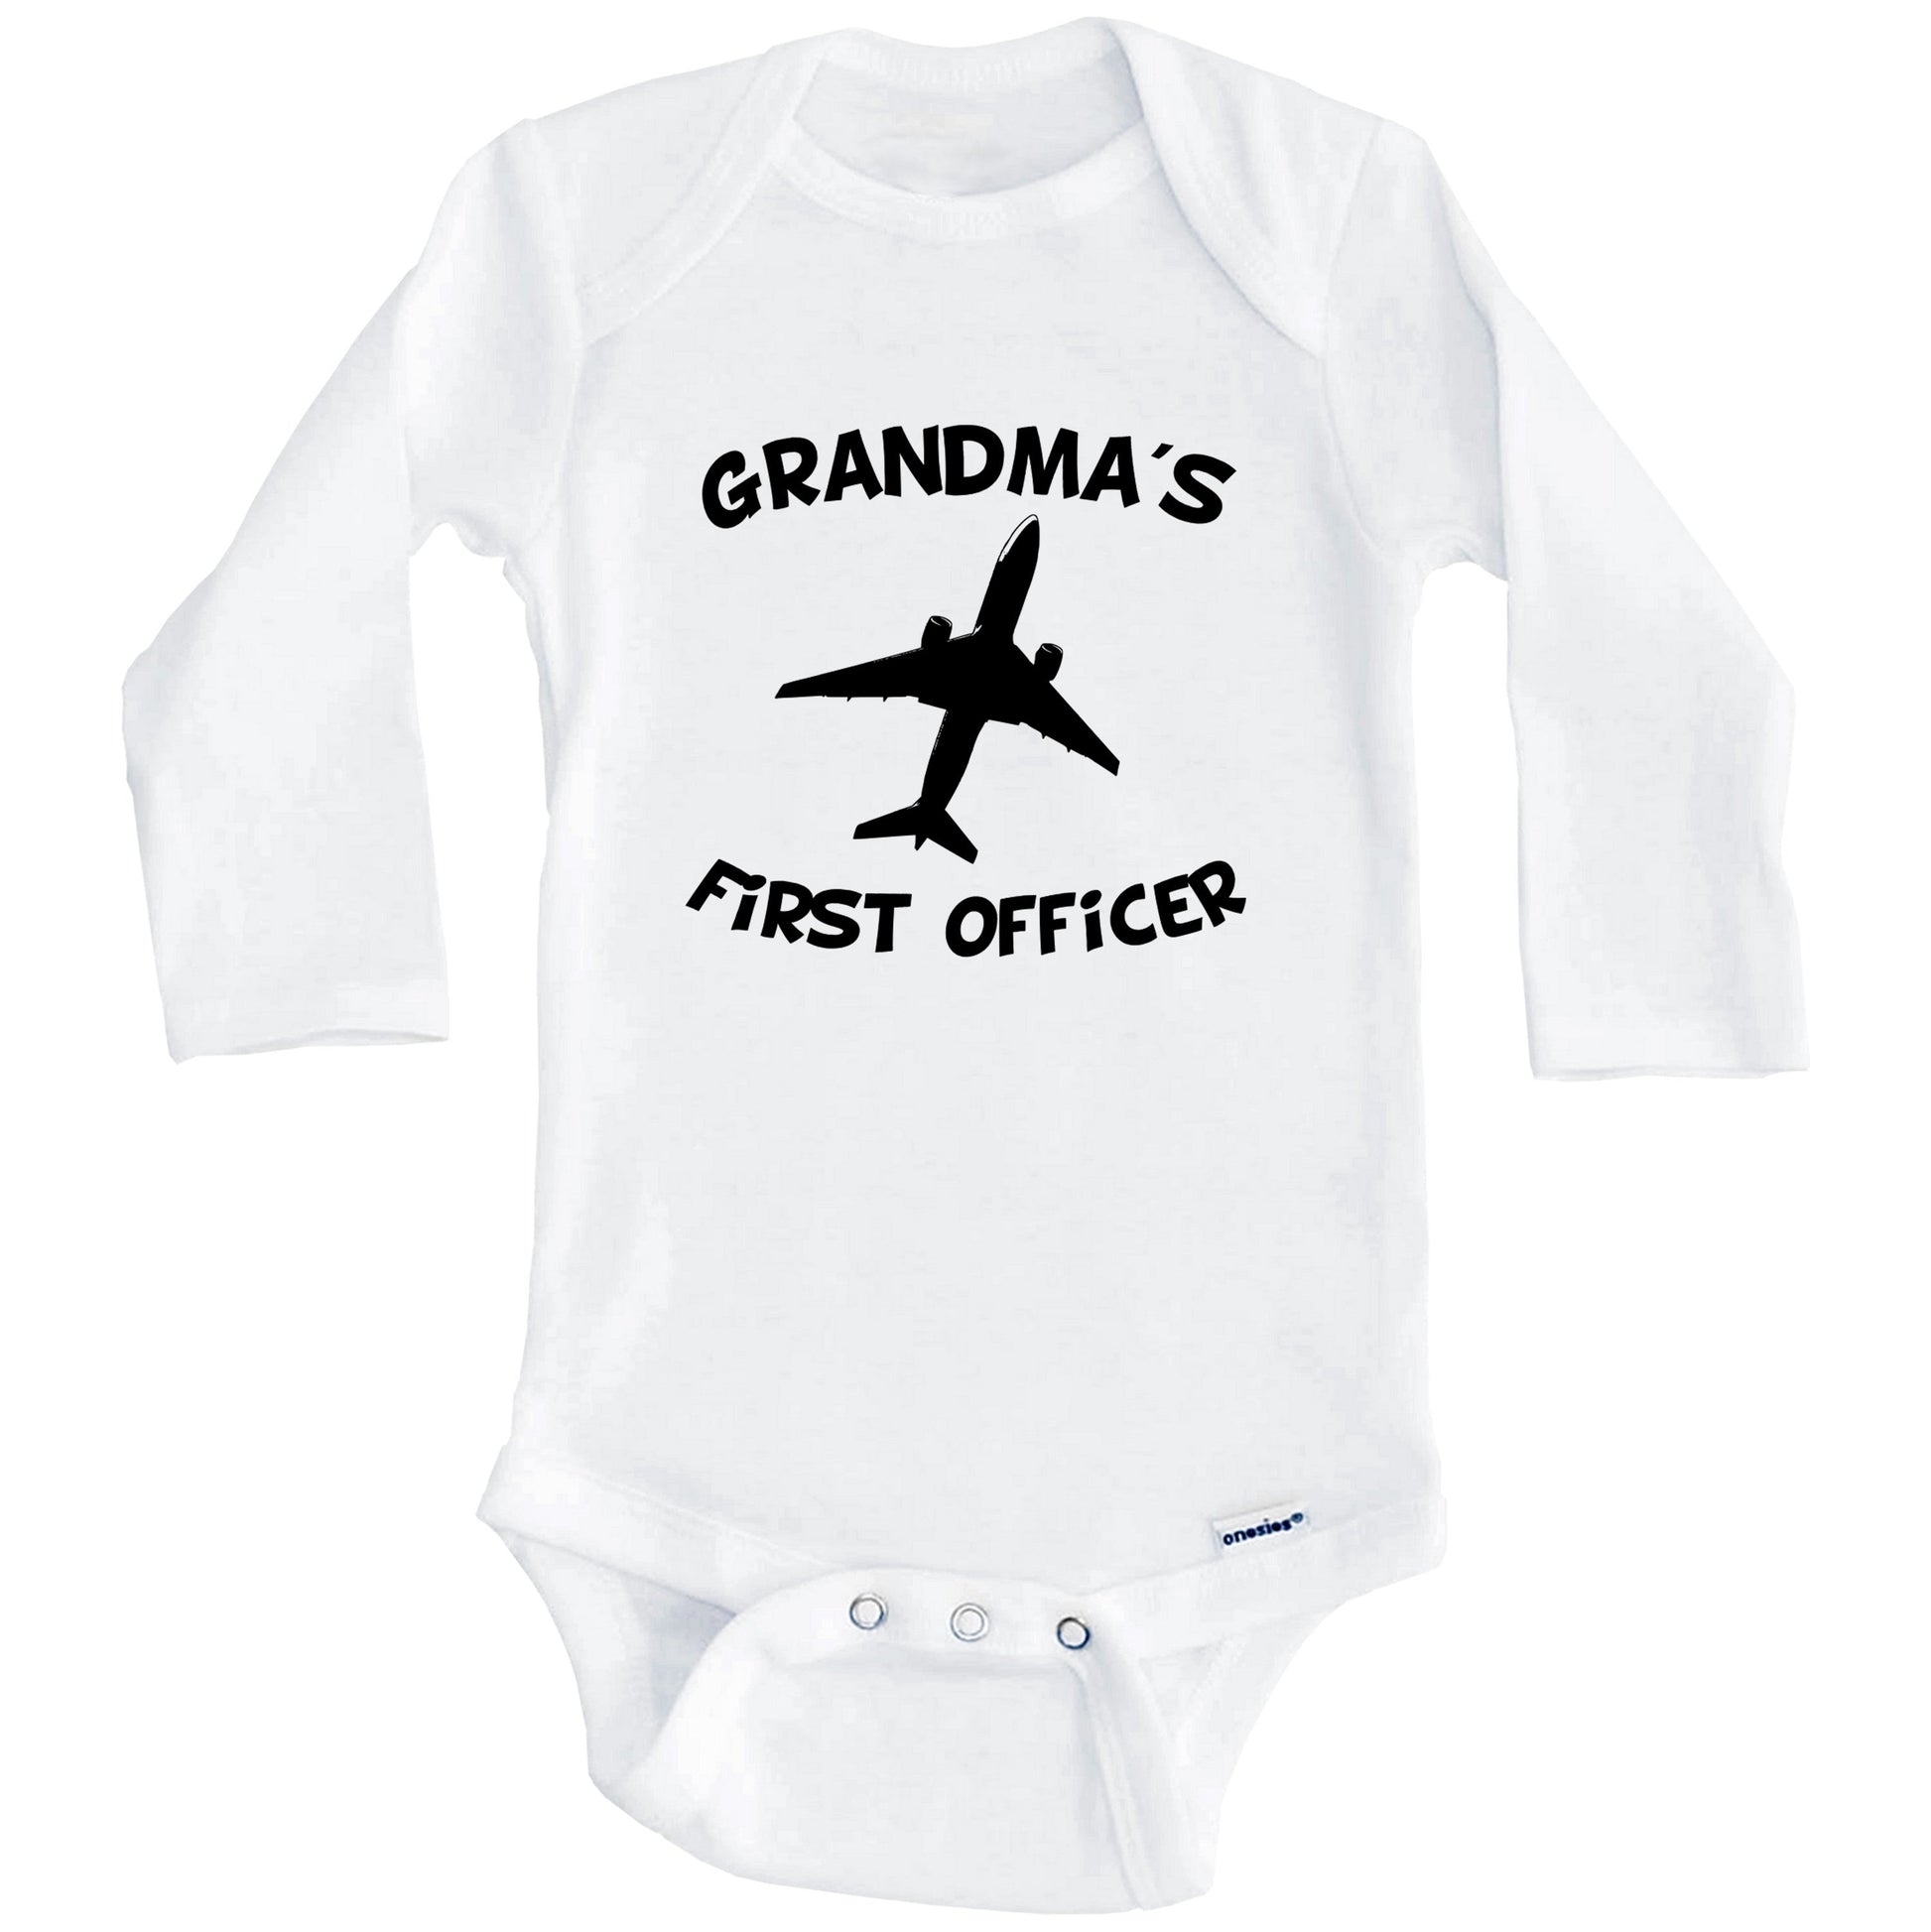 Grandma's First Officer Cute Airplane Baby Onesie (Long Sleeves)